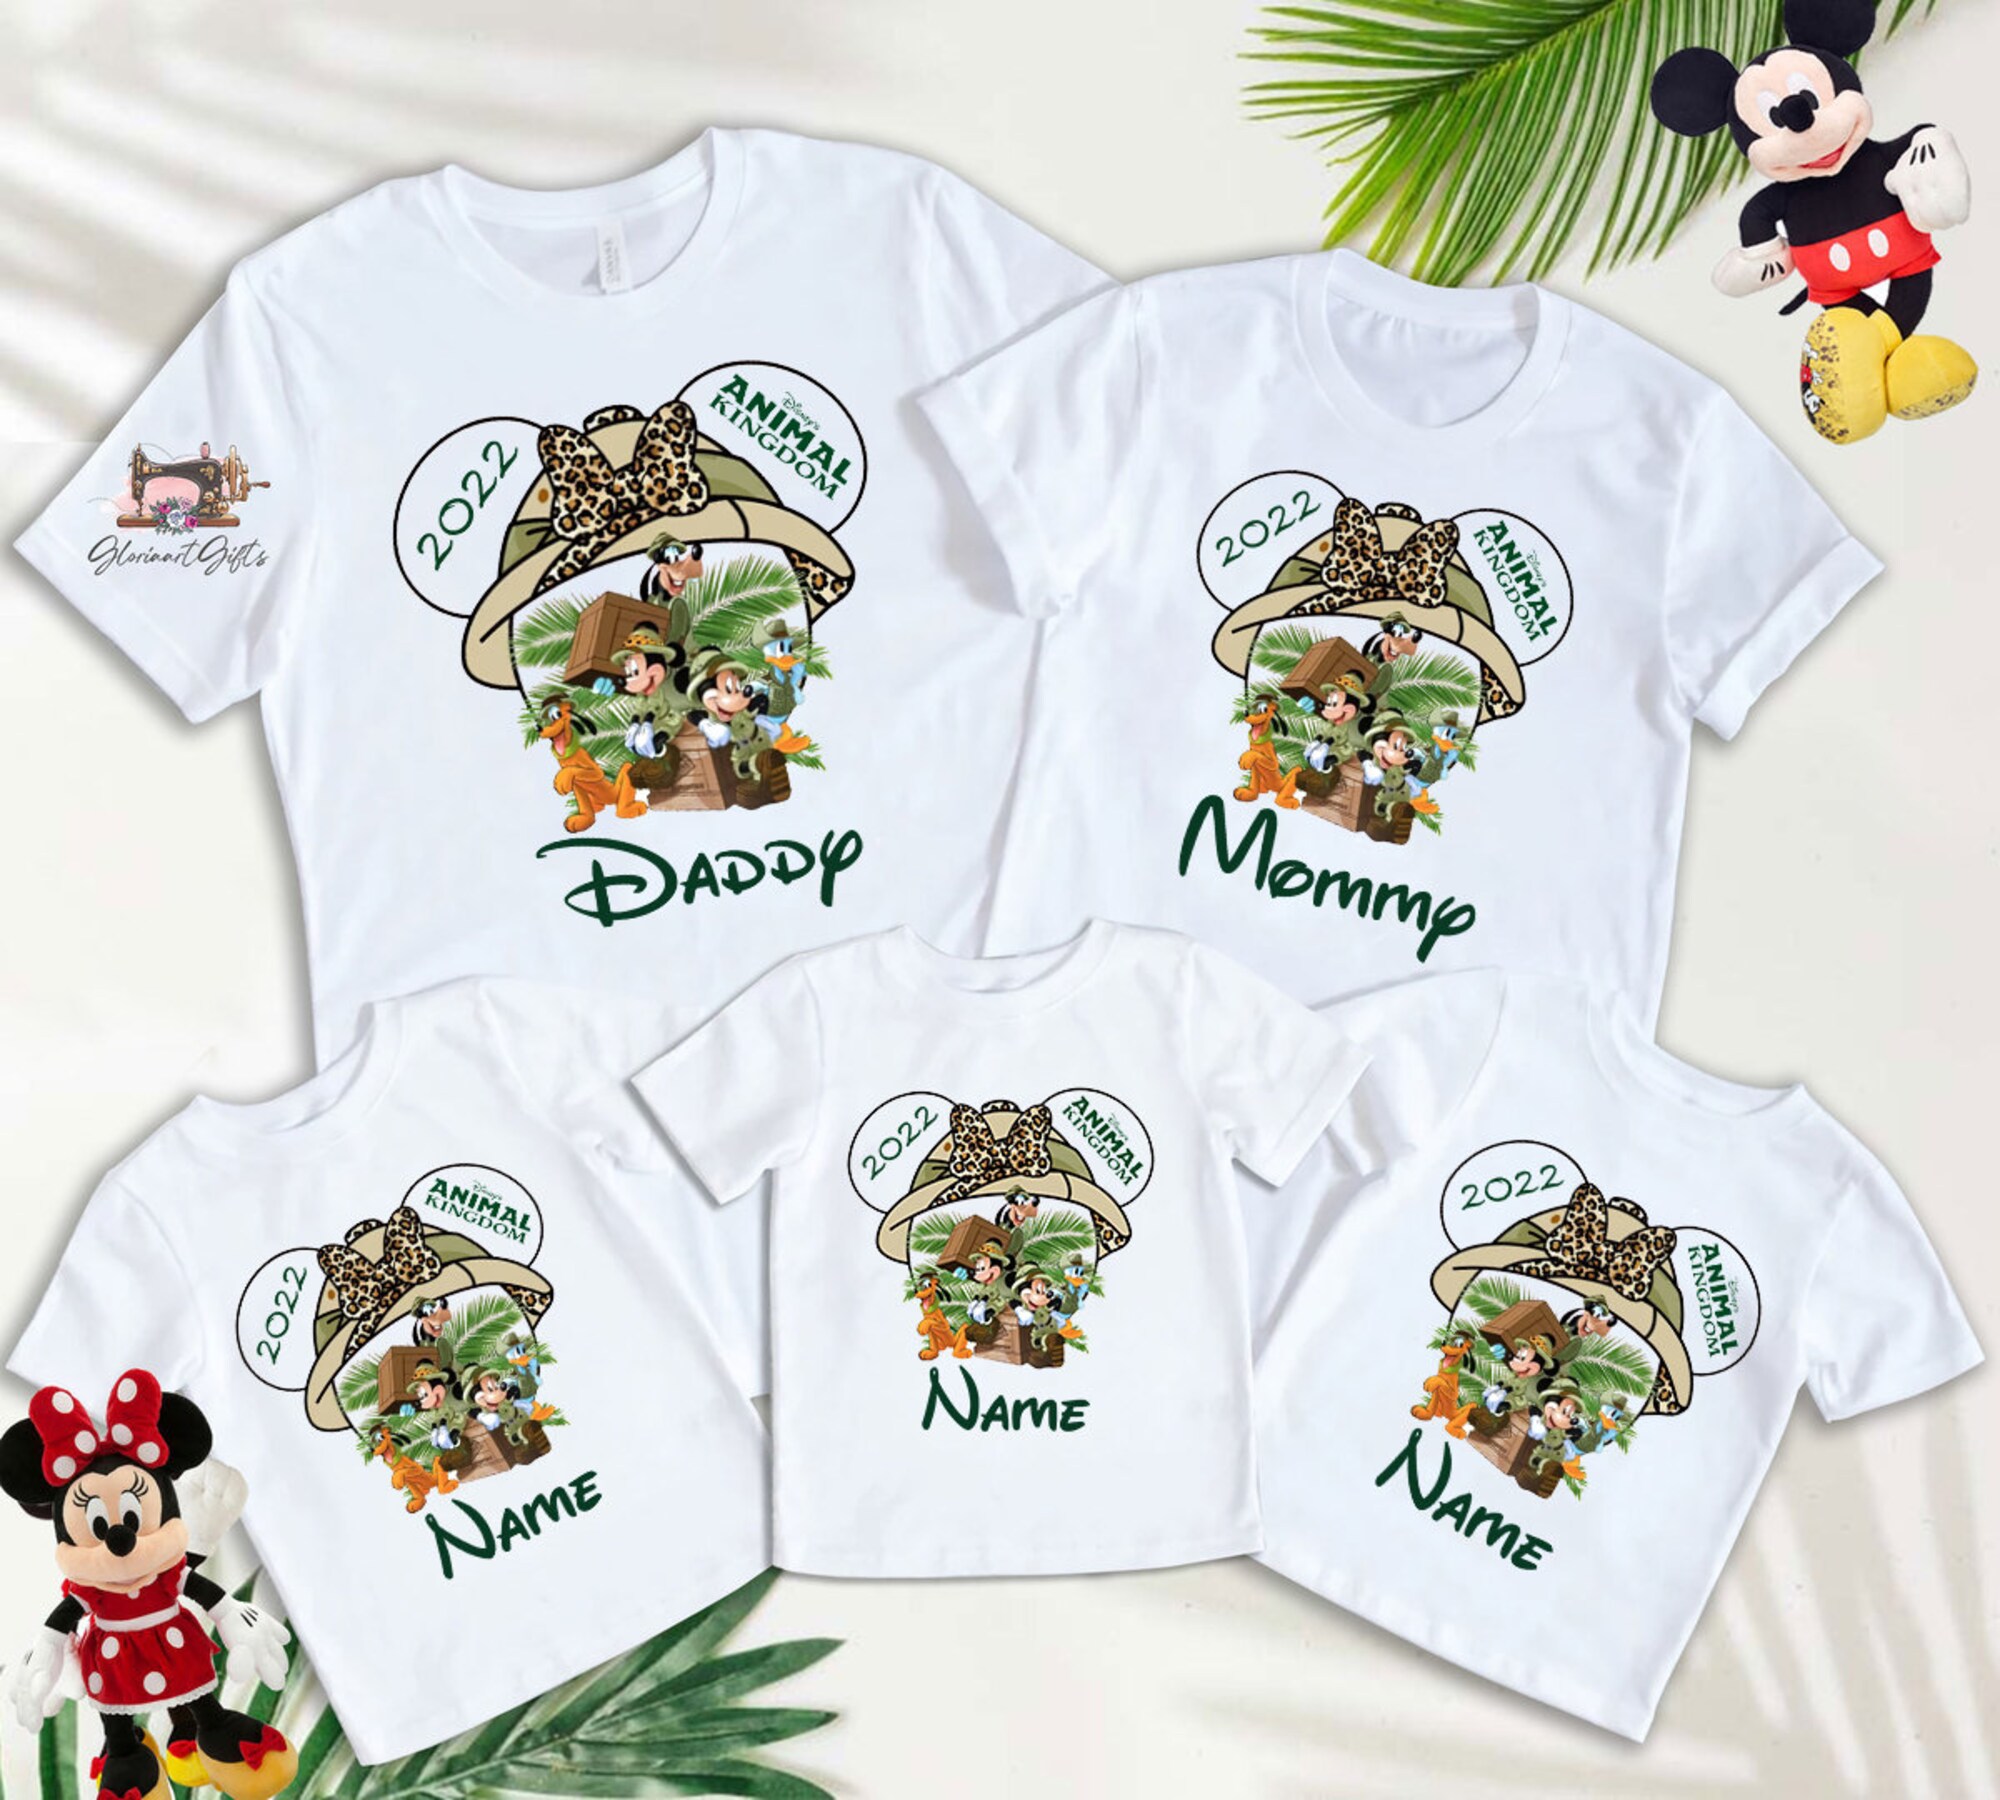 Disney Animal Kingdom 2022 shirt, Disney Safari shirt